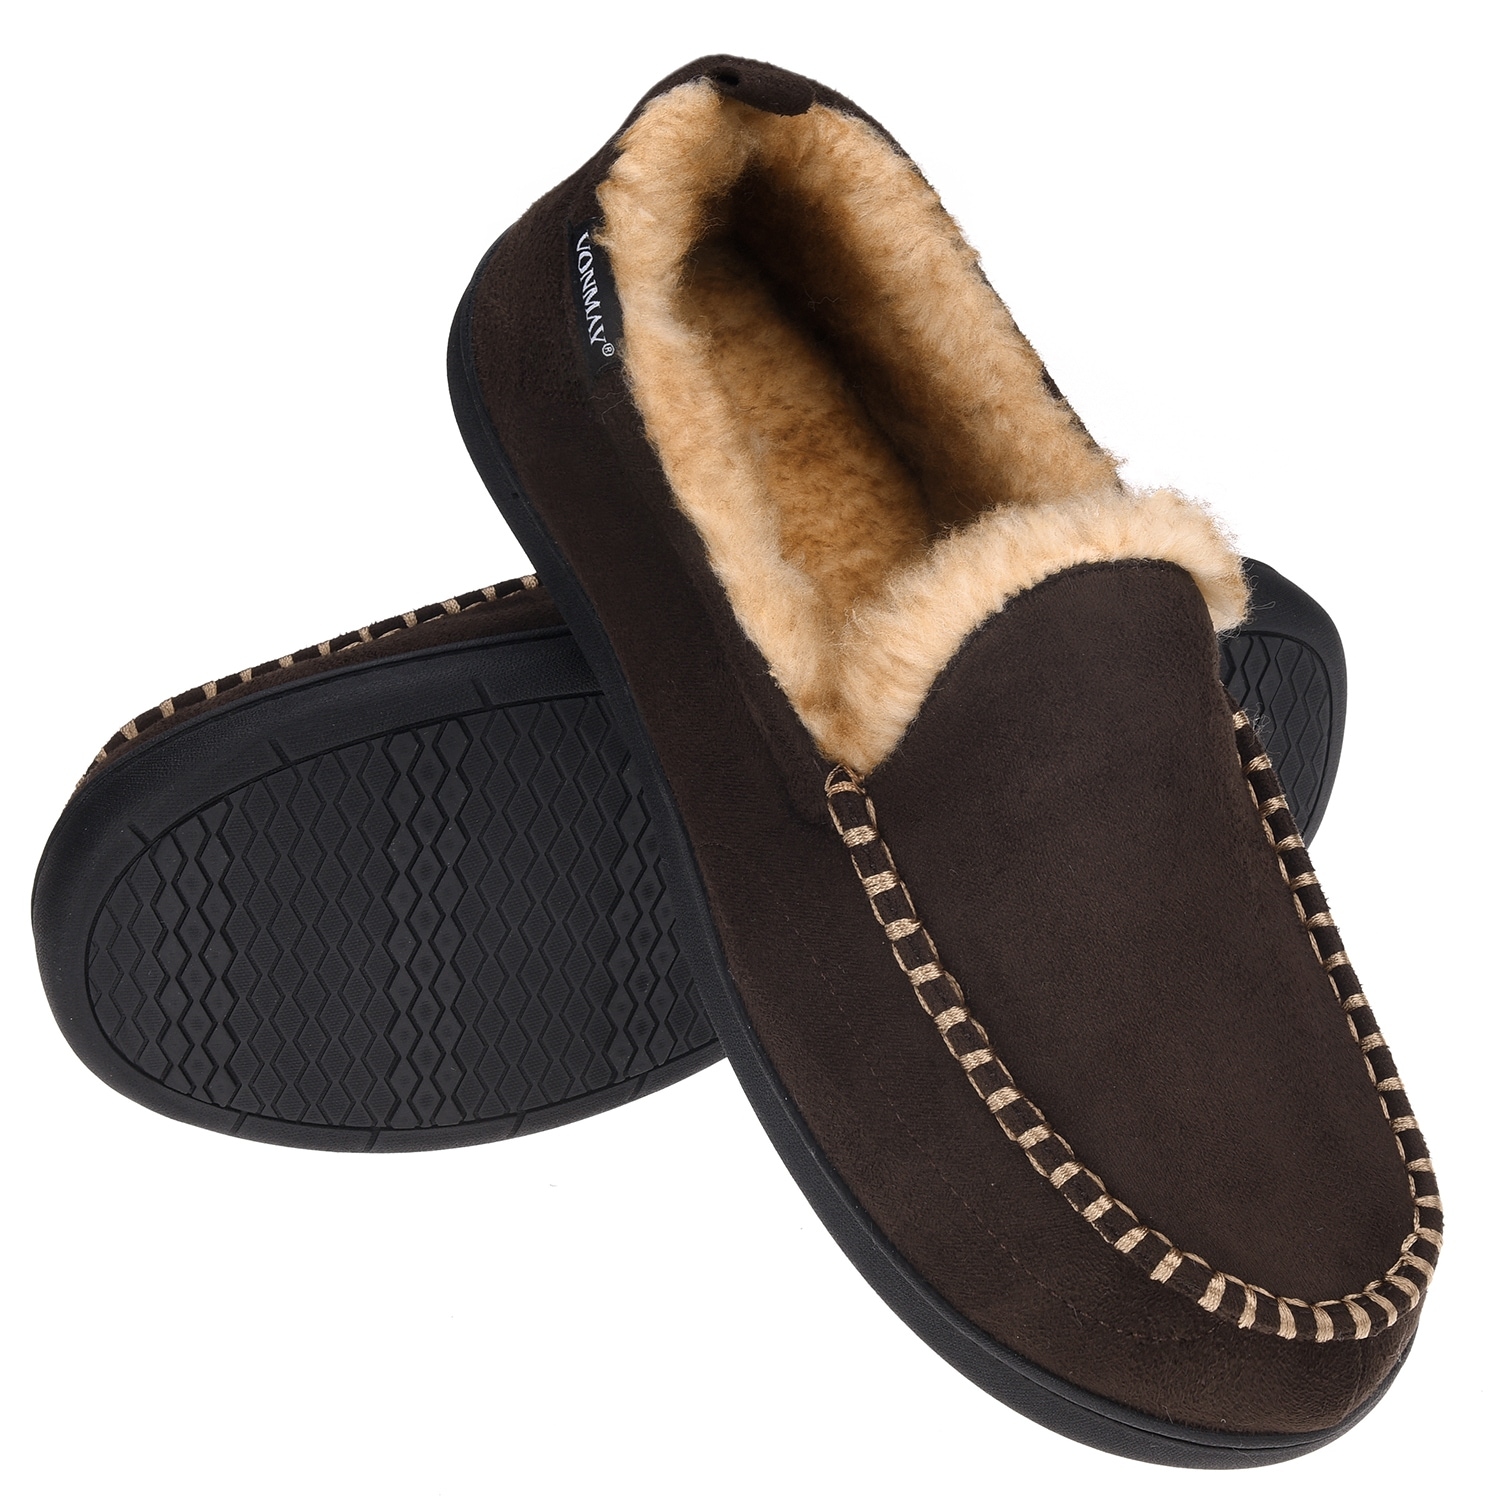 slip on indoor outdoor slippers